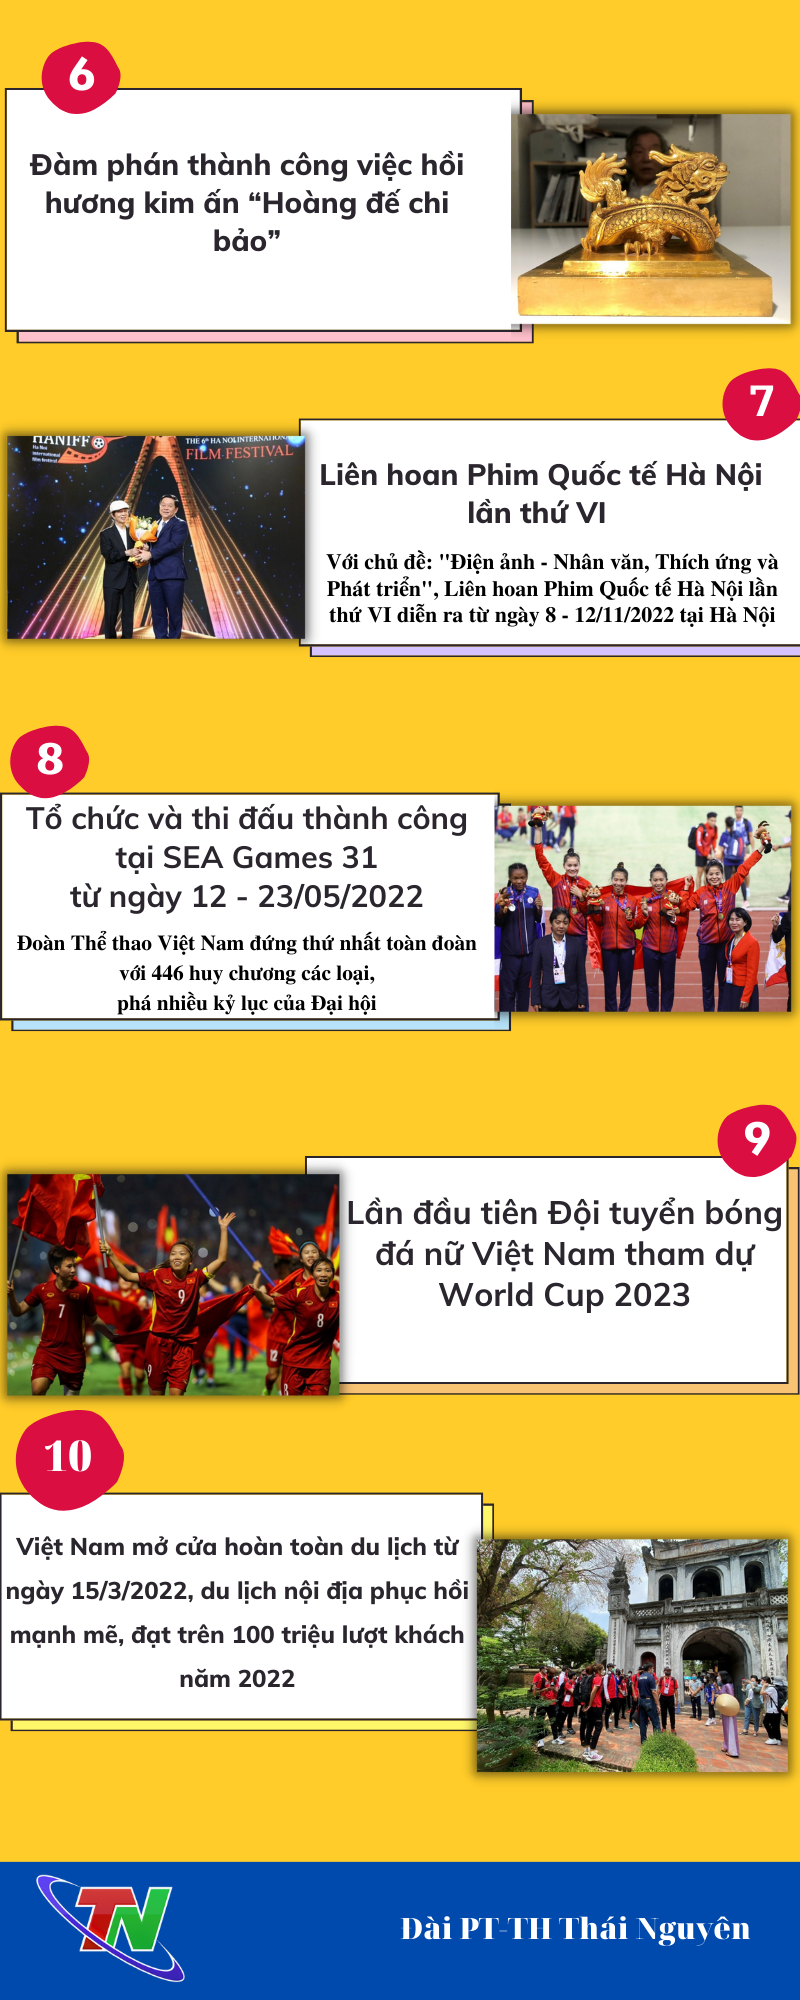 [Infographic]10 sự kiện văn hóa, thể thao và du lịch tiêu biểu năm 2022